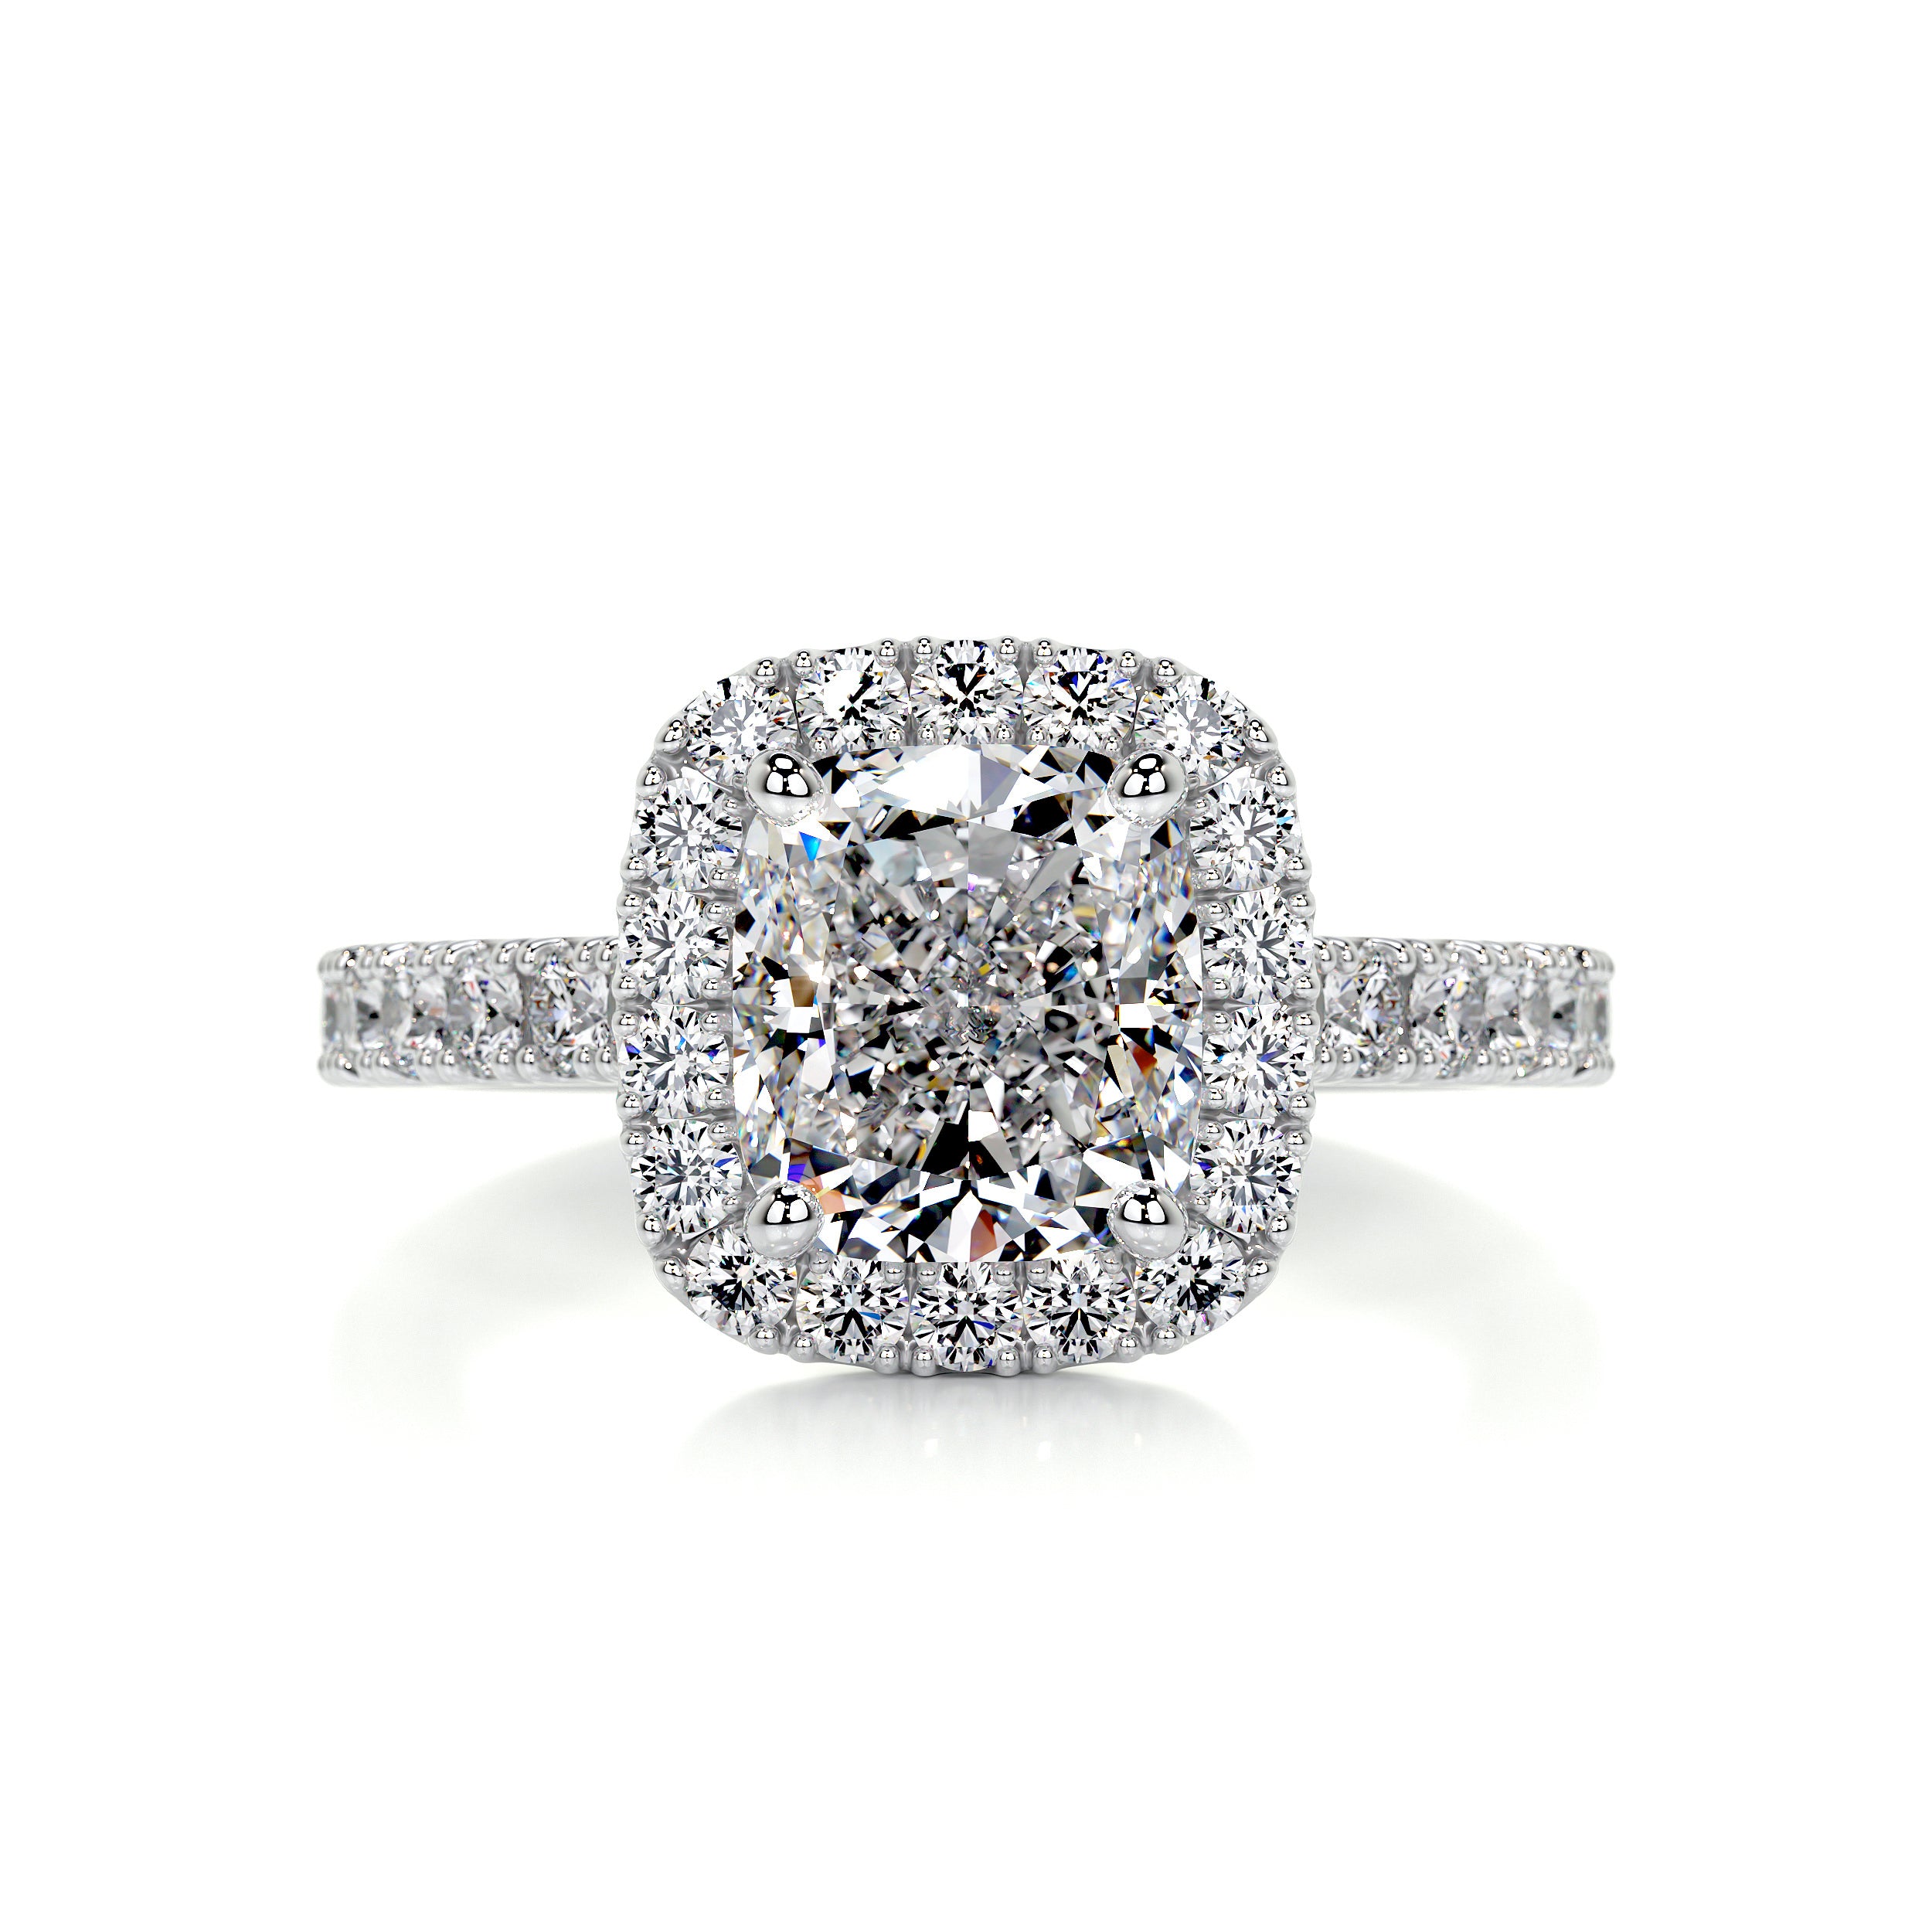 Celeste Diamond Engagement Ring -14K White Gold